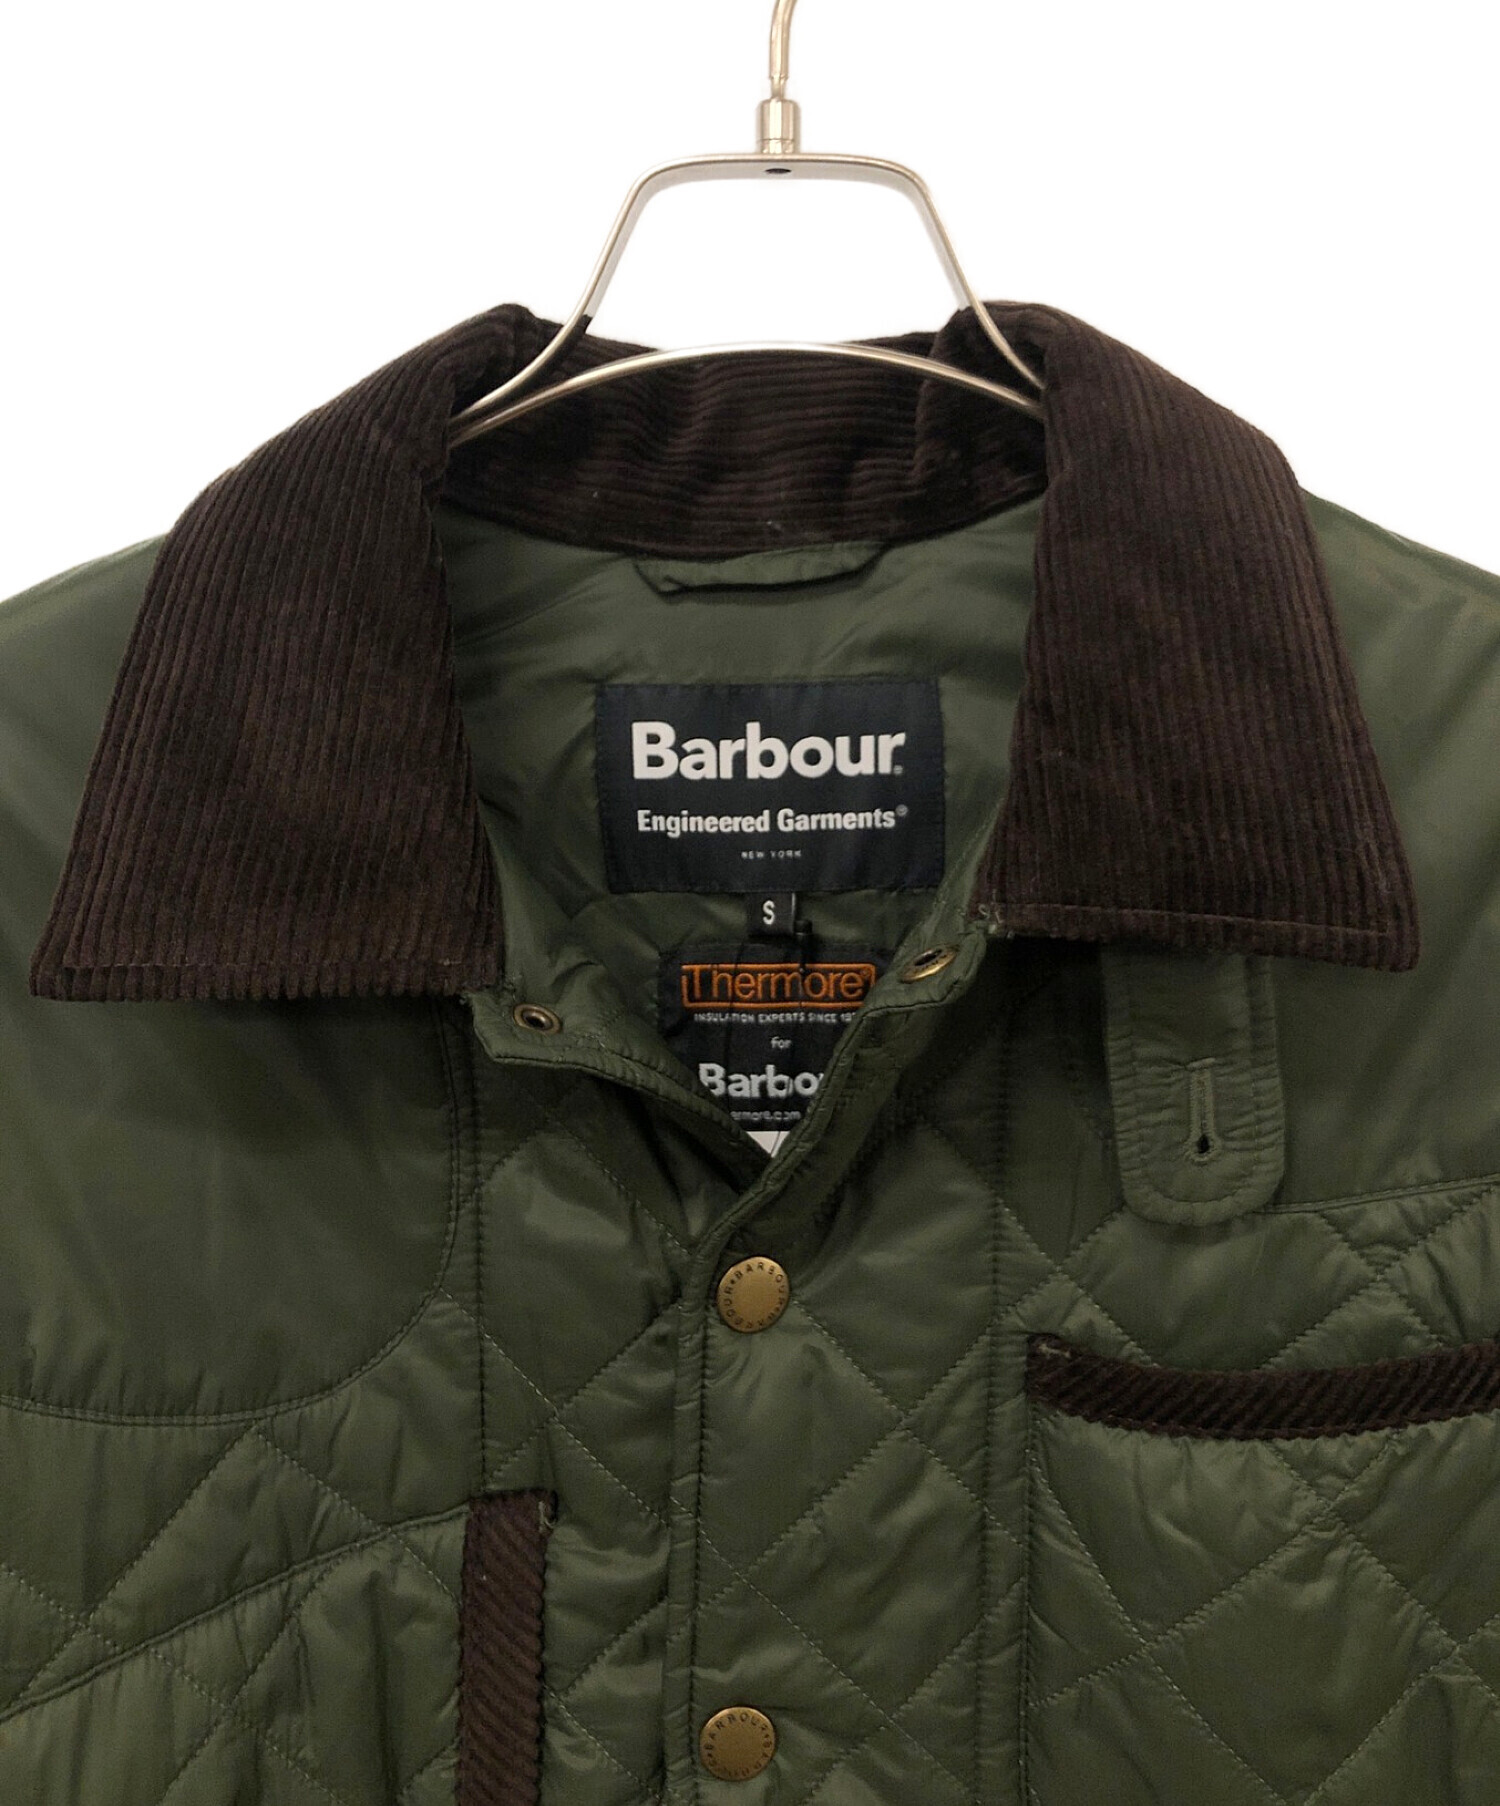 Barbour (バブアー) Engineered Garments (エンジニアードガーメンツ) スタテンキルティングジャケット カーキ サイズ:S  未使用品